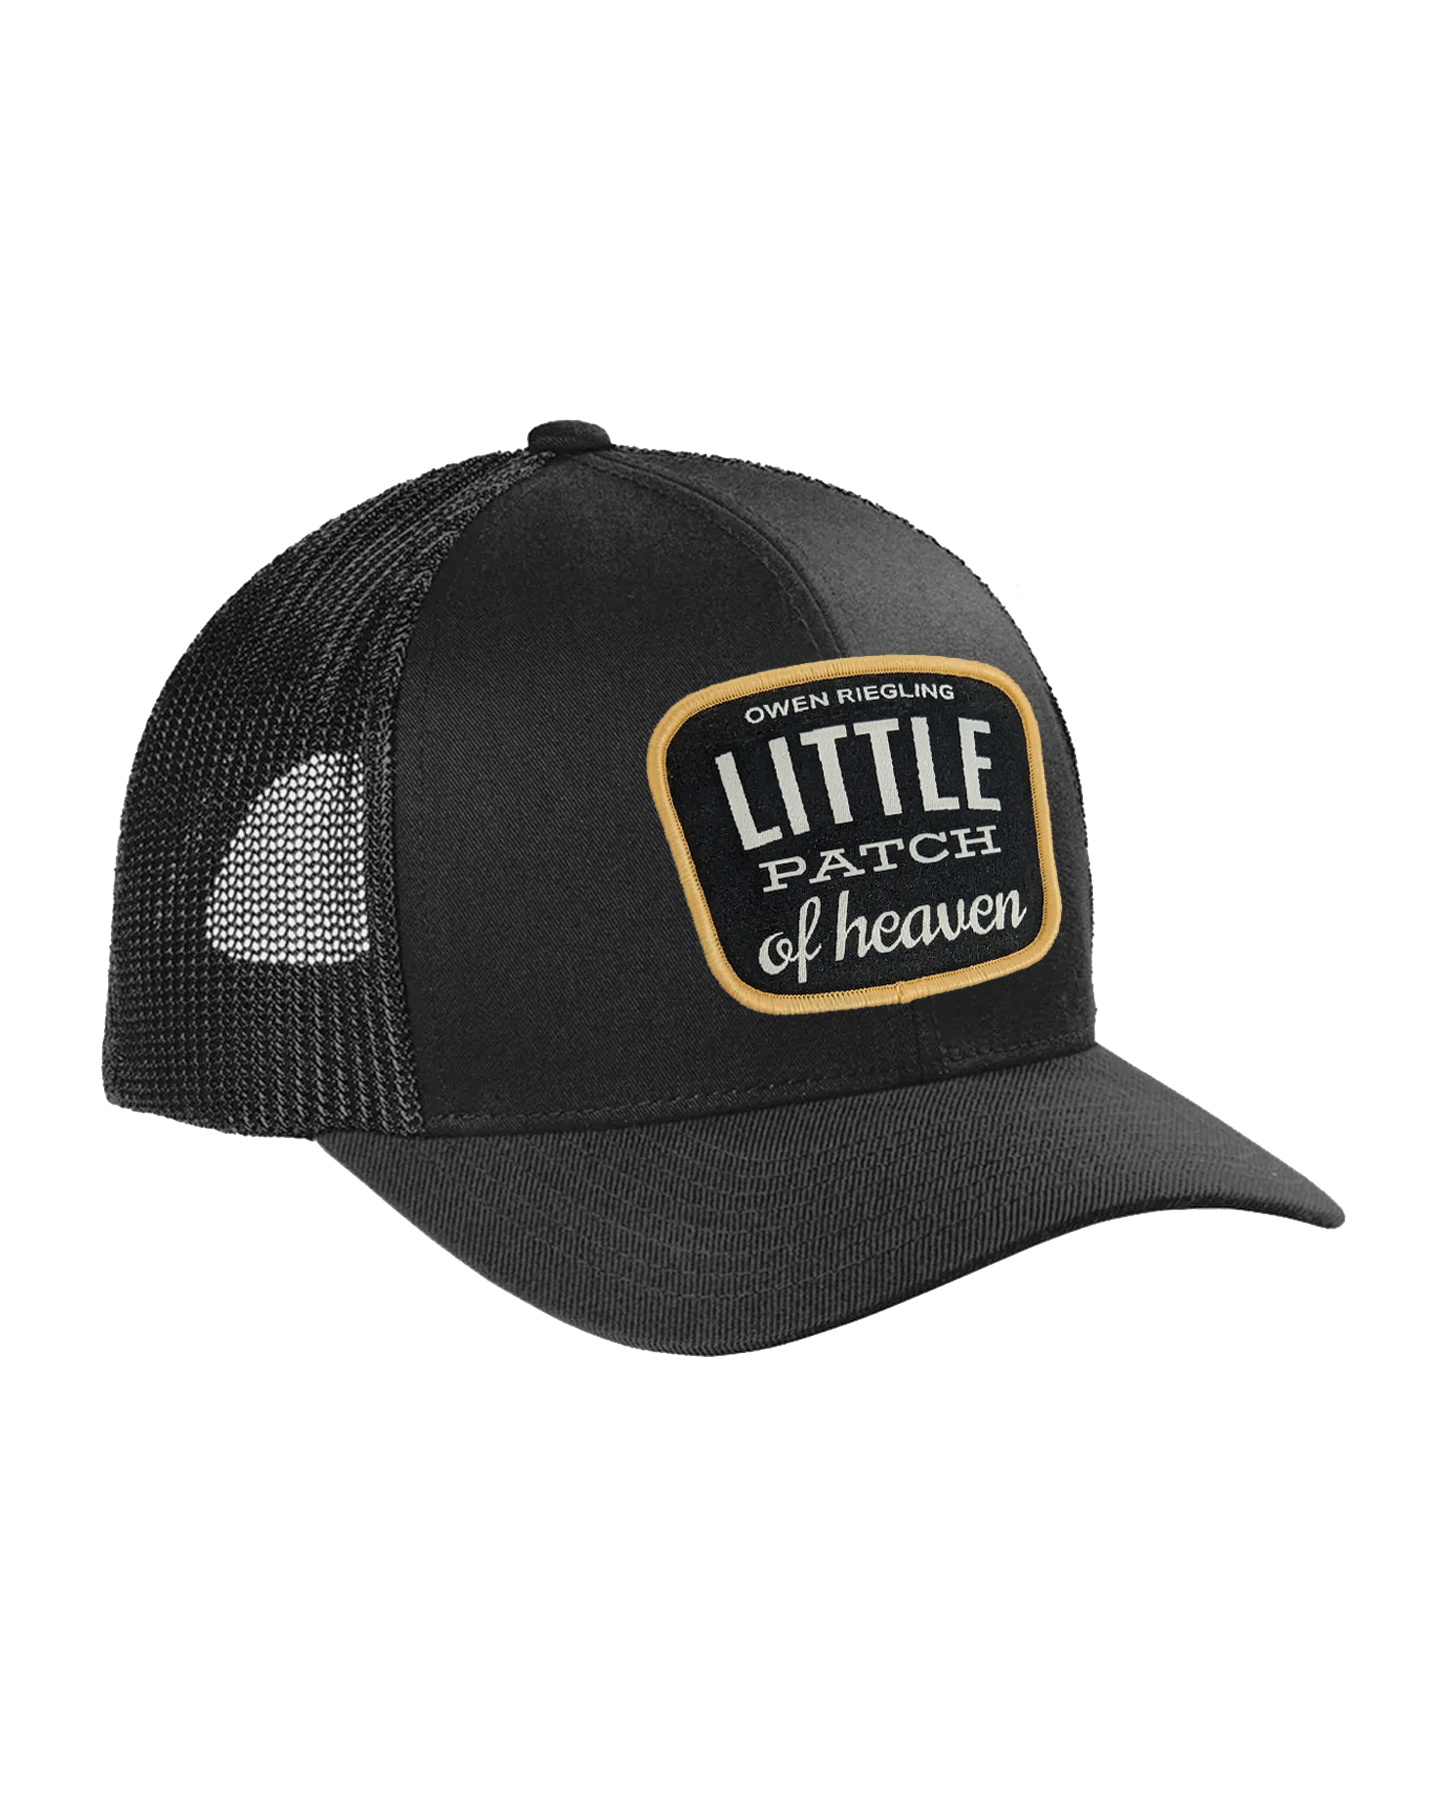 Little Patch of Heaven Patch Trucker hat in Black